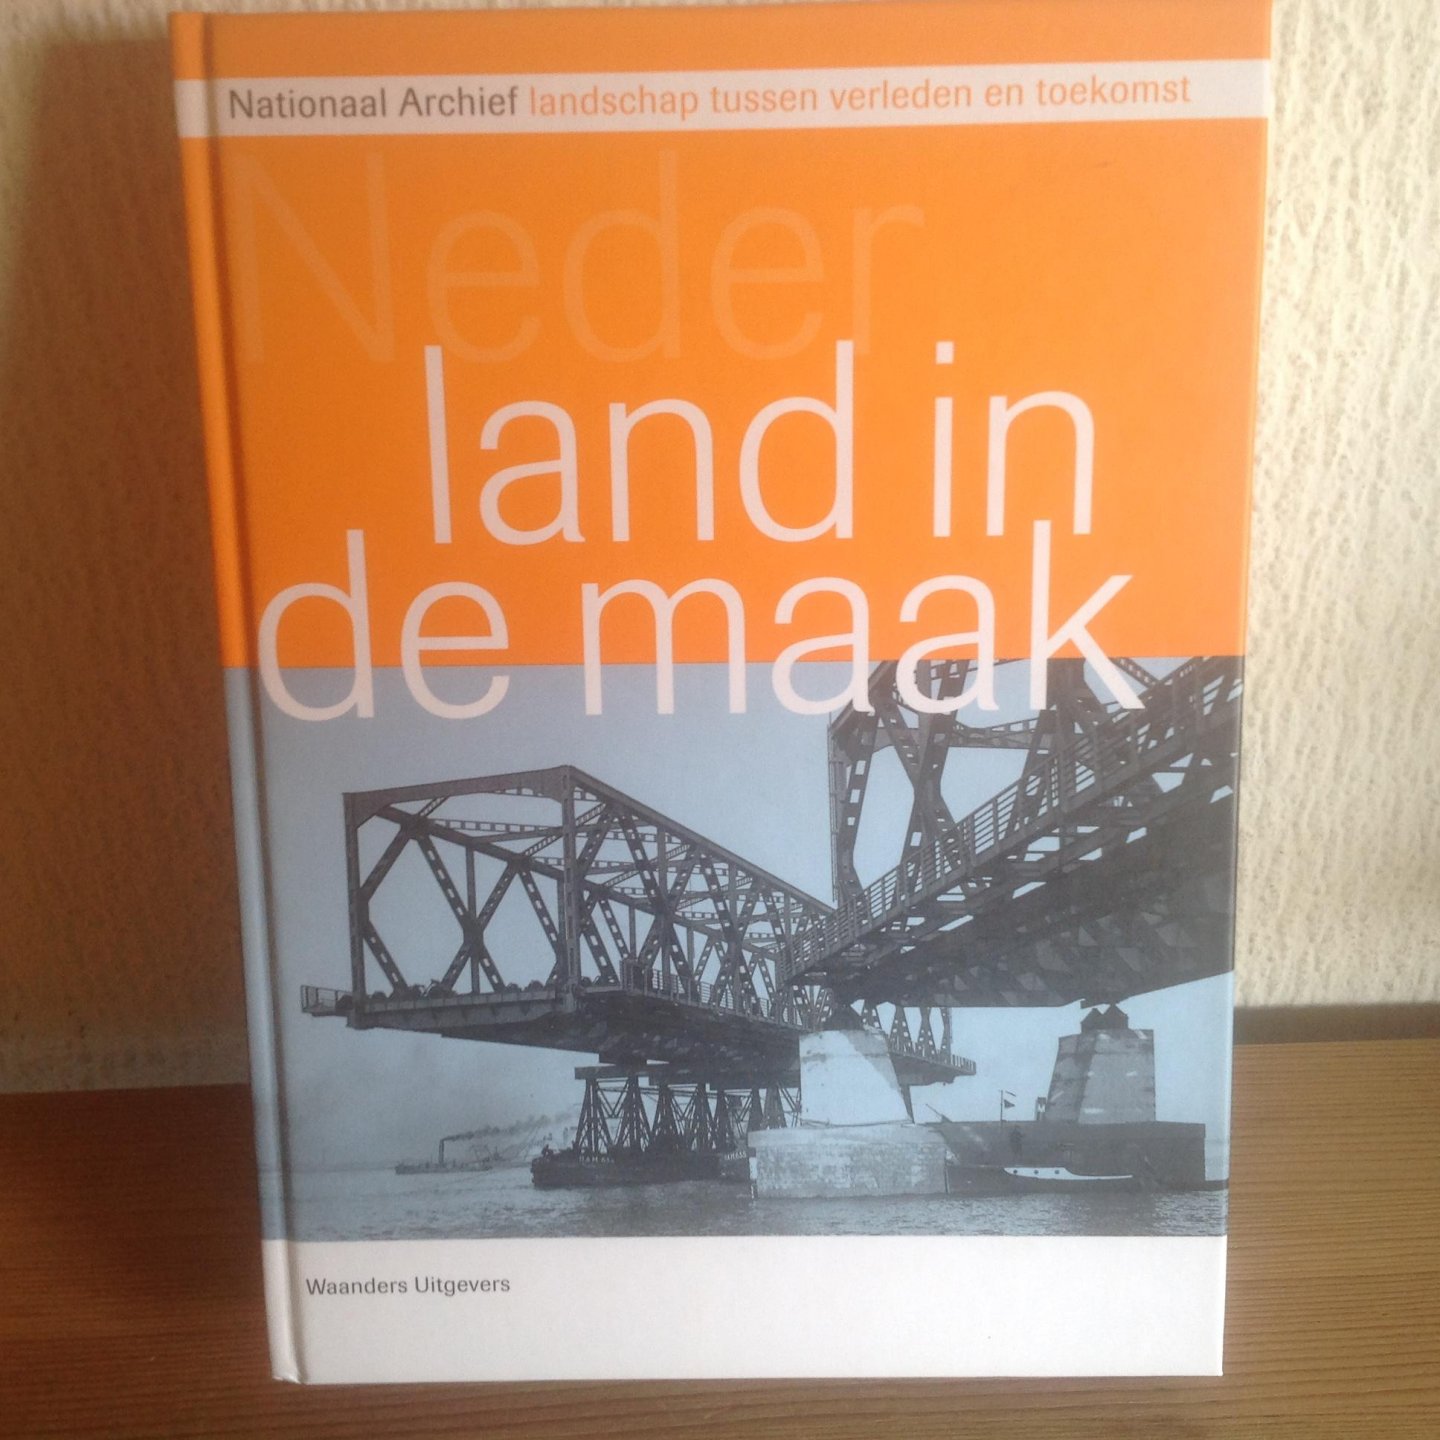 Egmond, F. - Nederland in de maak / verschenen bij het 200 jarig bestaan van Nationaal Archief landschapsvorming tussen verleden en toekomstvisie